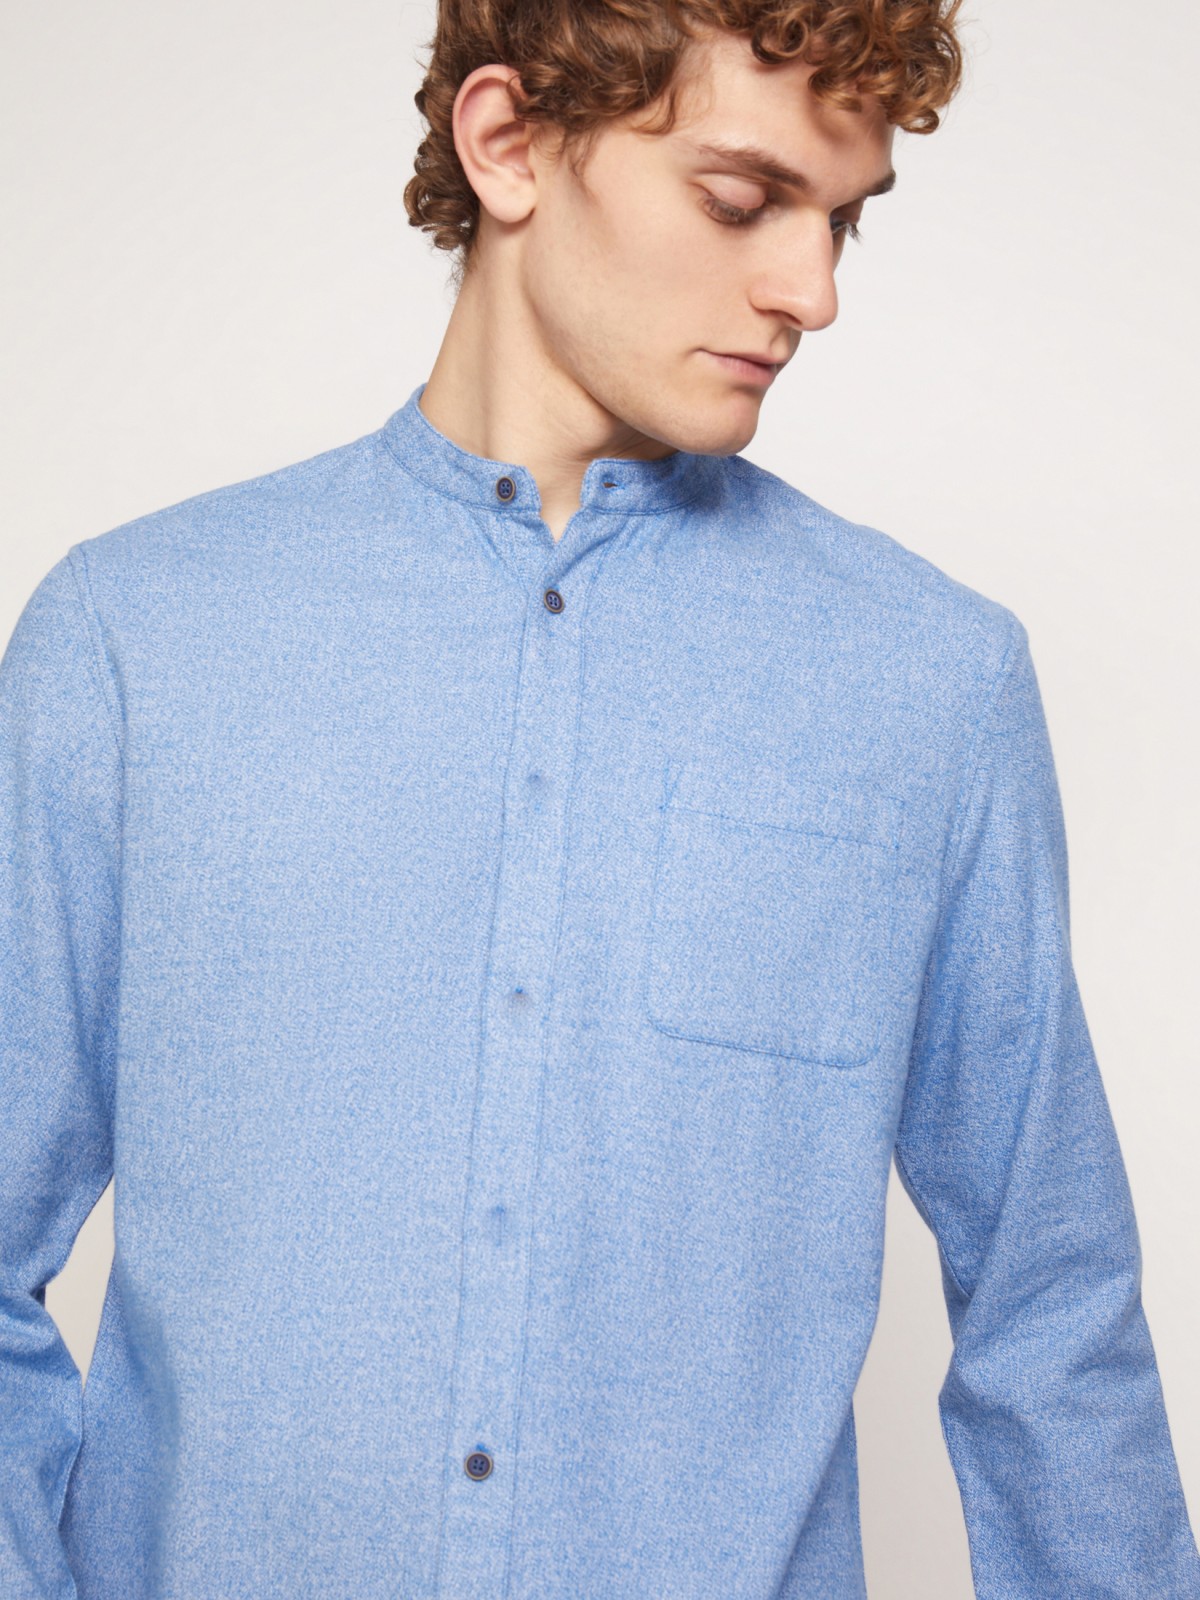 Фланелевая рубашка с воротником-стойкой zolla 211342191021, цвет голубой, размер S - фото 3